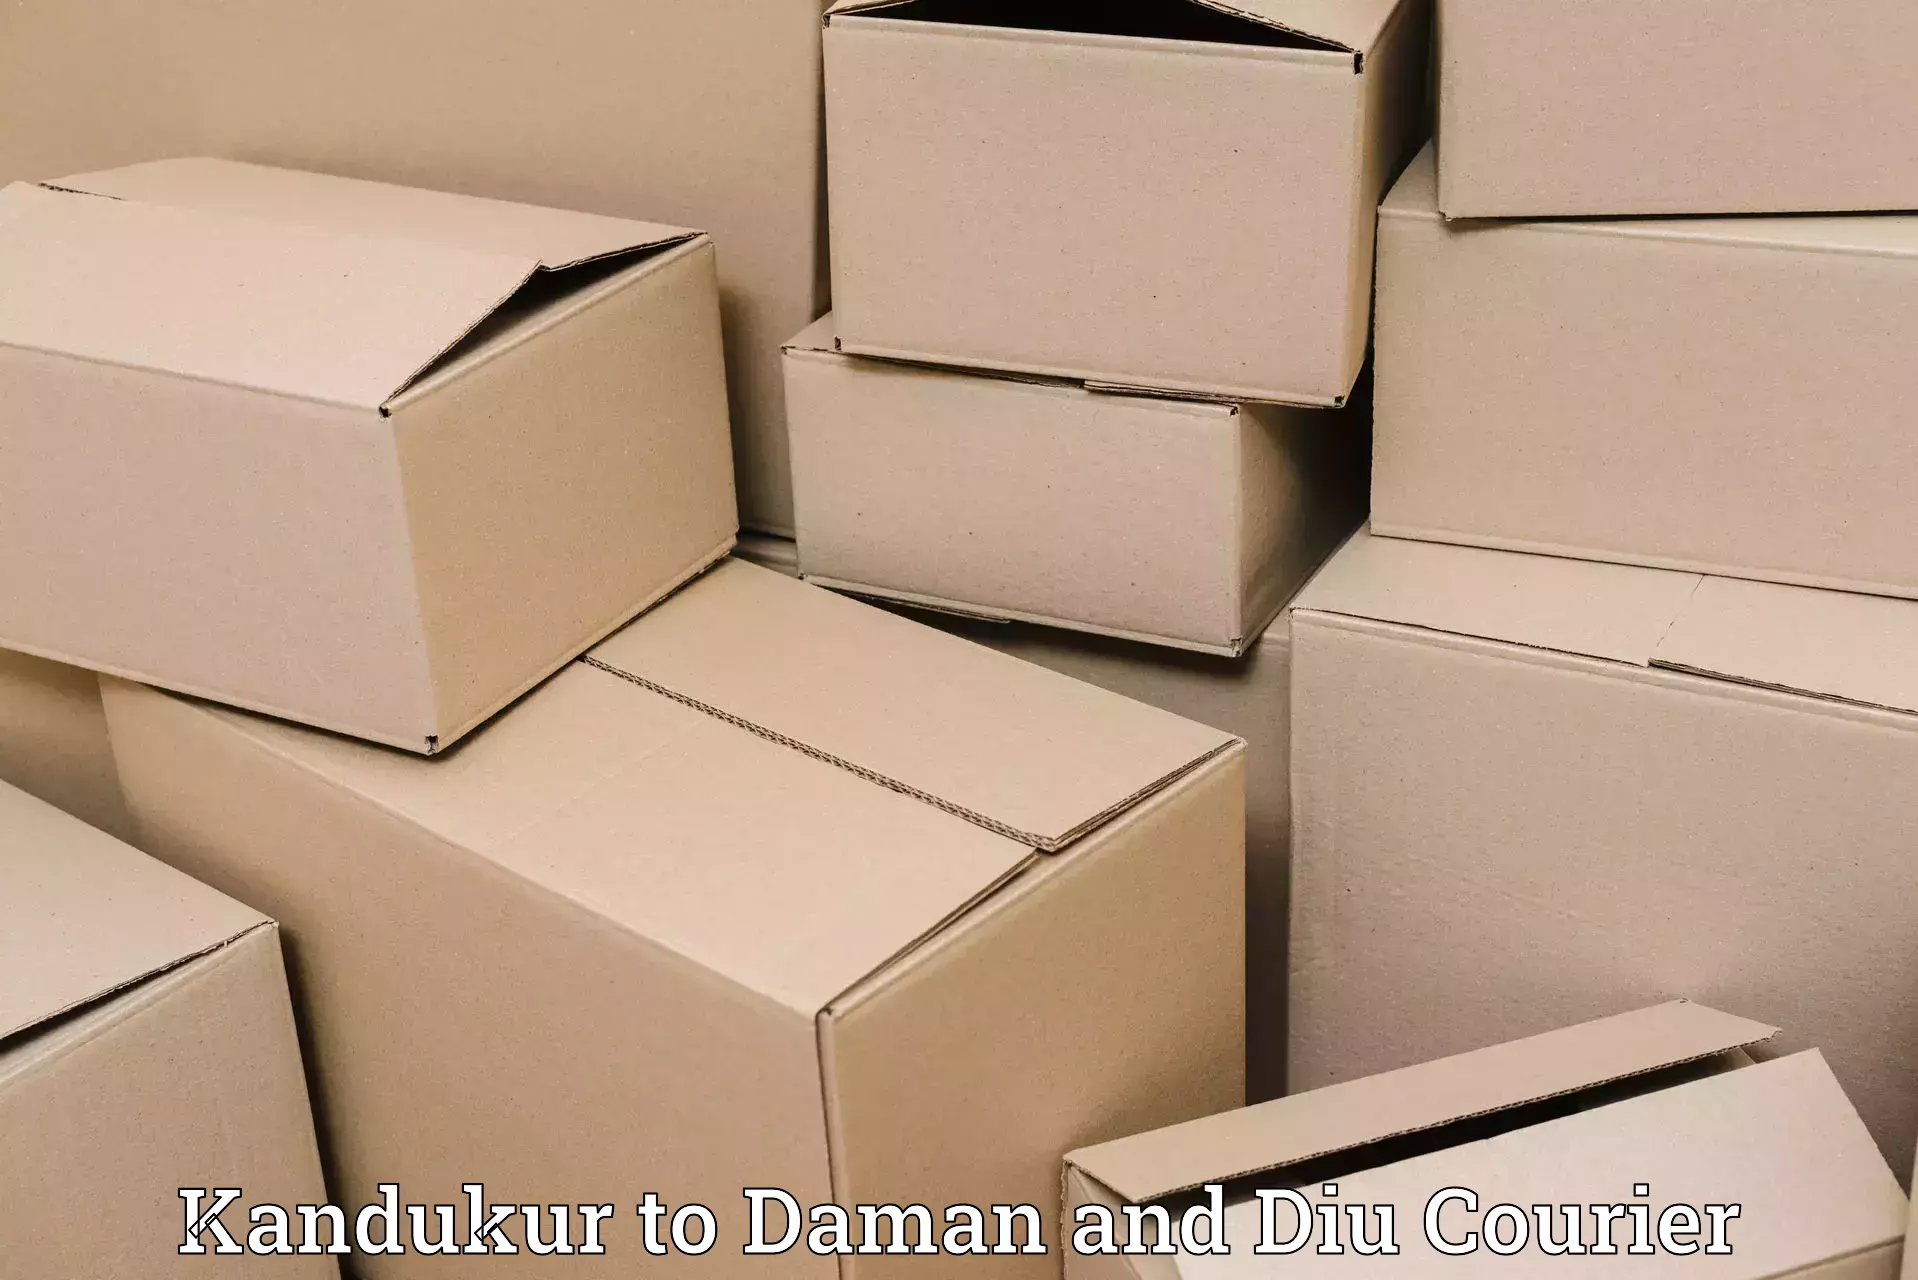 Customer-centric shipping in Kandukur to Diu